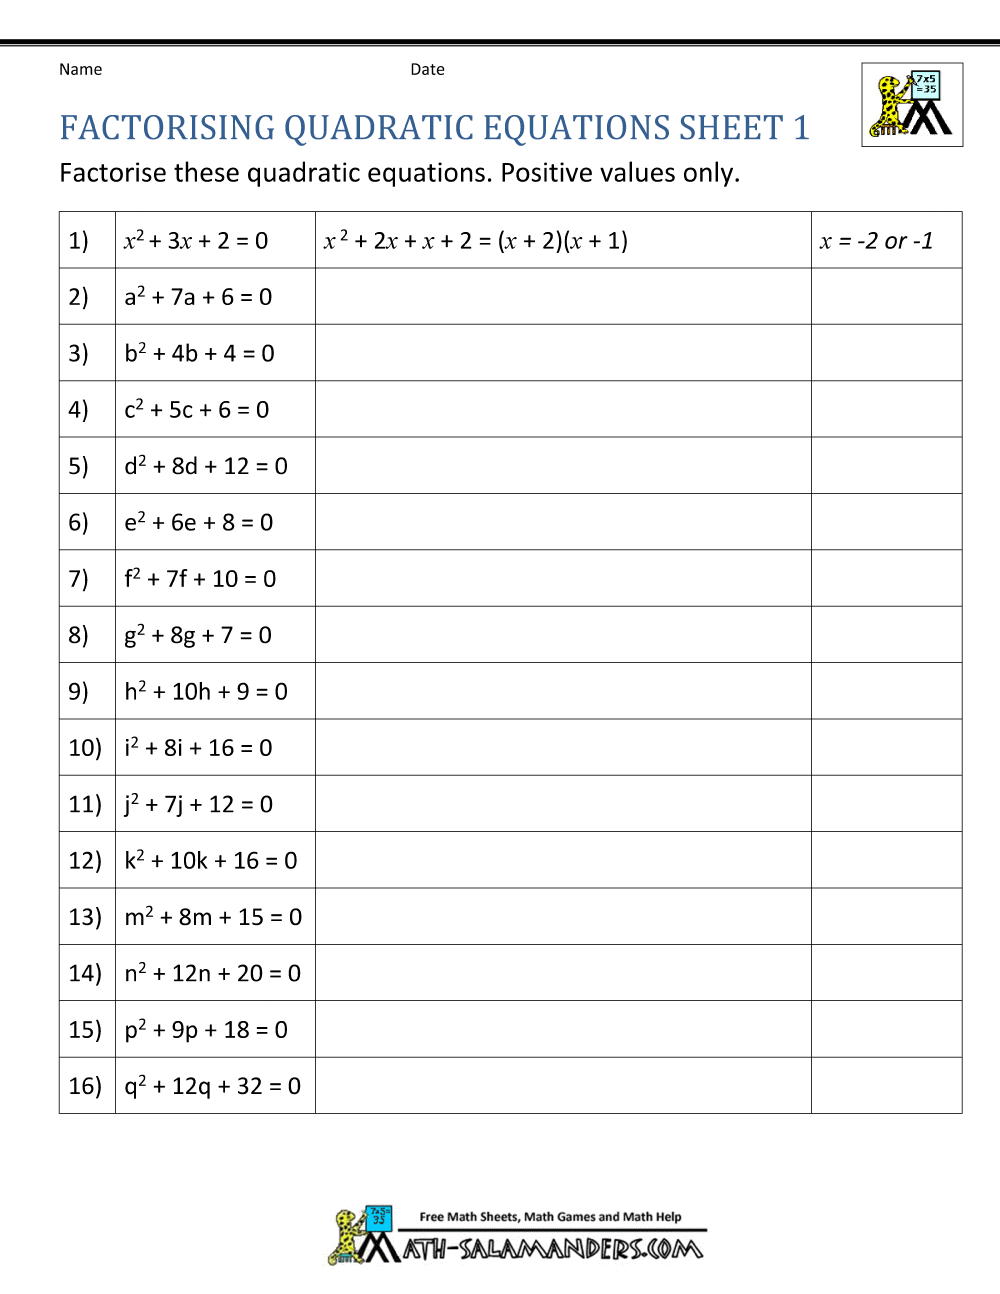 Factoring Quadratic Equations Worksheets Regarding Factoring Quadratic Equations Worksheet